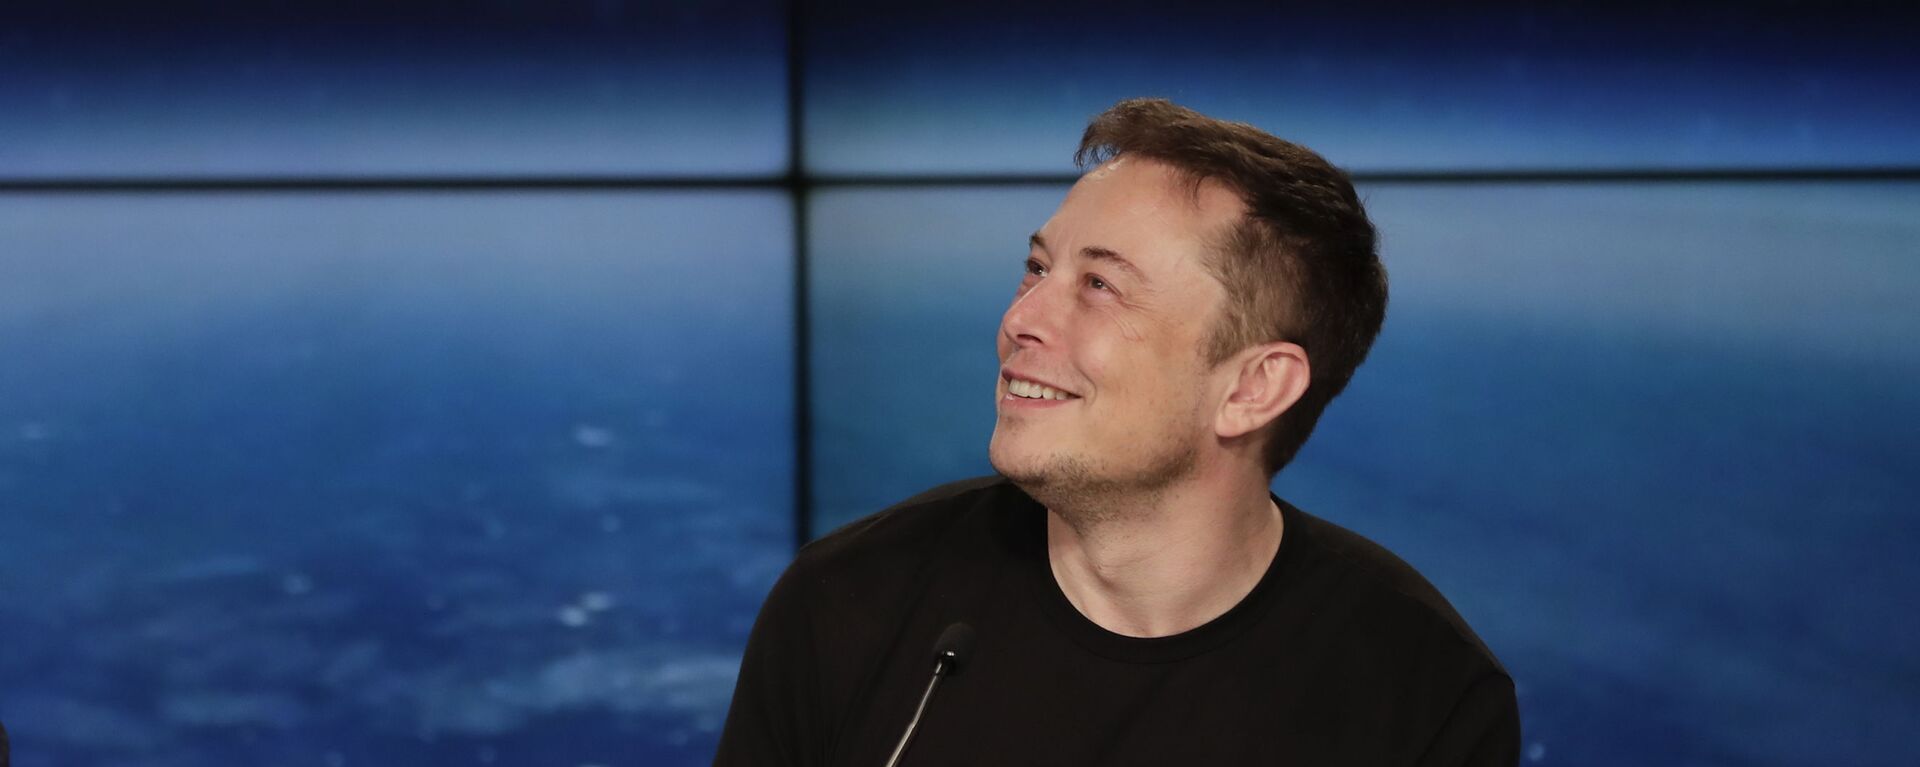 Генеральный директор Tesla и SpaceX Илон Маск на пресс-конференции после успешного запуска тяжелой ракеты Falcon 9 SpaceX (6 февраля 2018). Флорида - Sputnik Армения, 1920, 09.01.2021